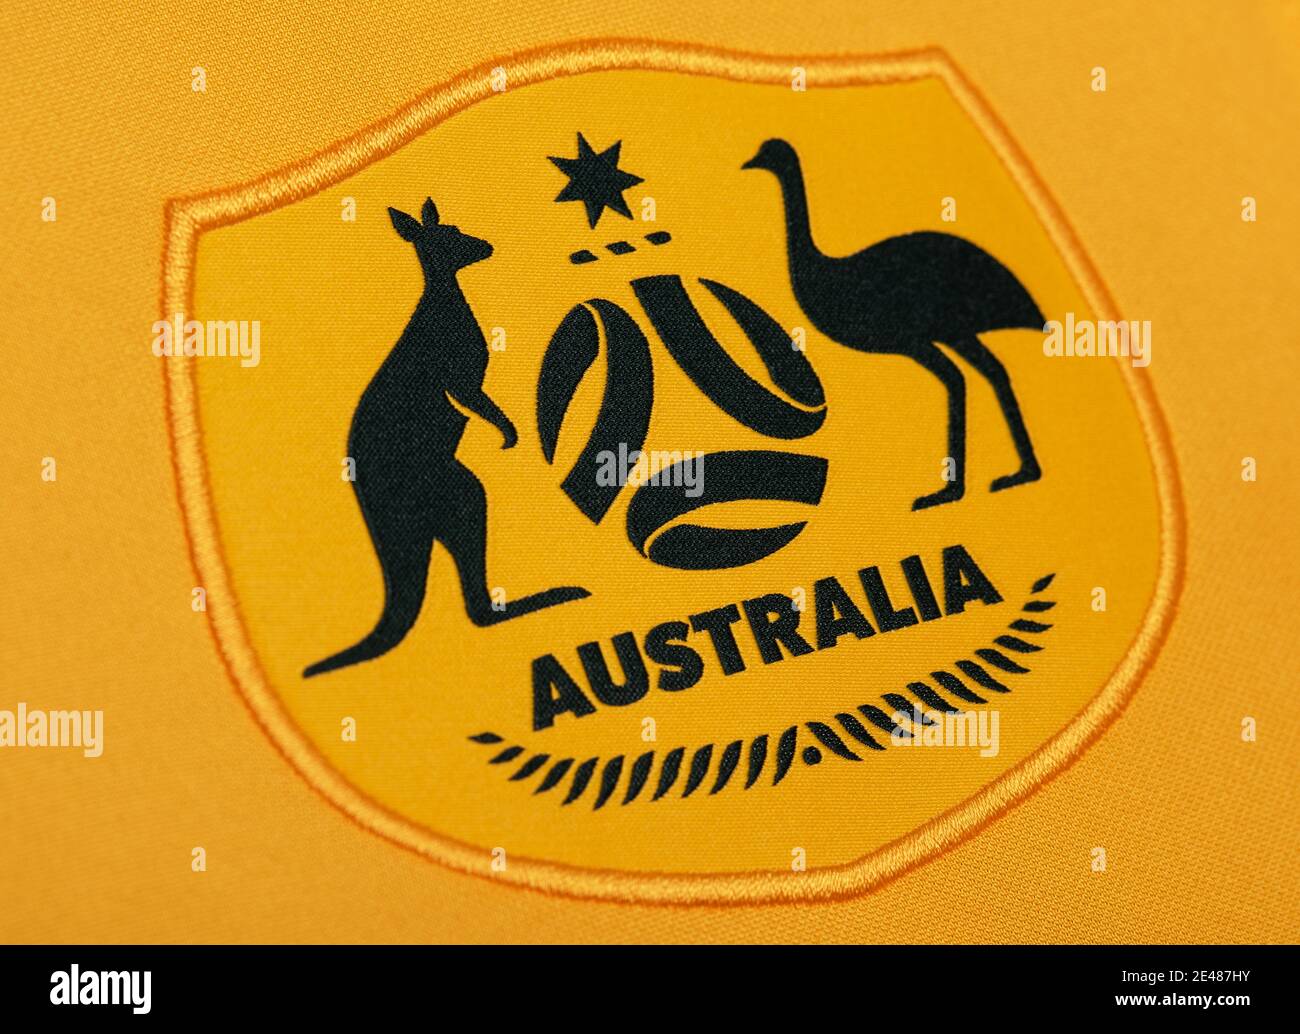 Primo piano della divisa della squadra di calcio nazionale australiana Foto  stock - Alamy